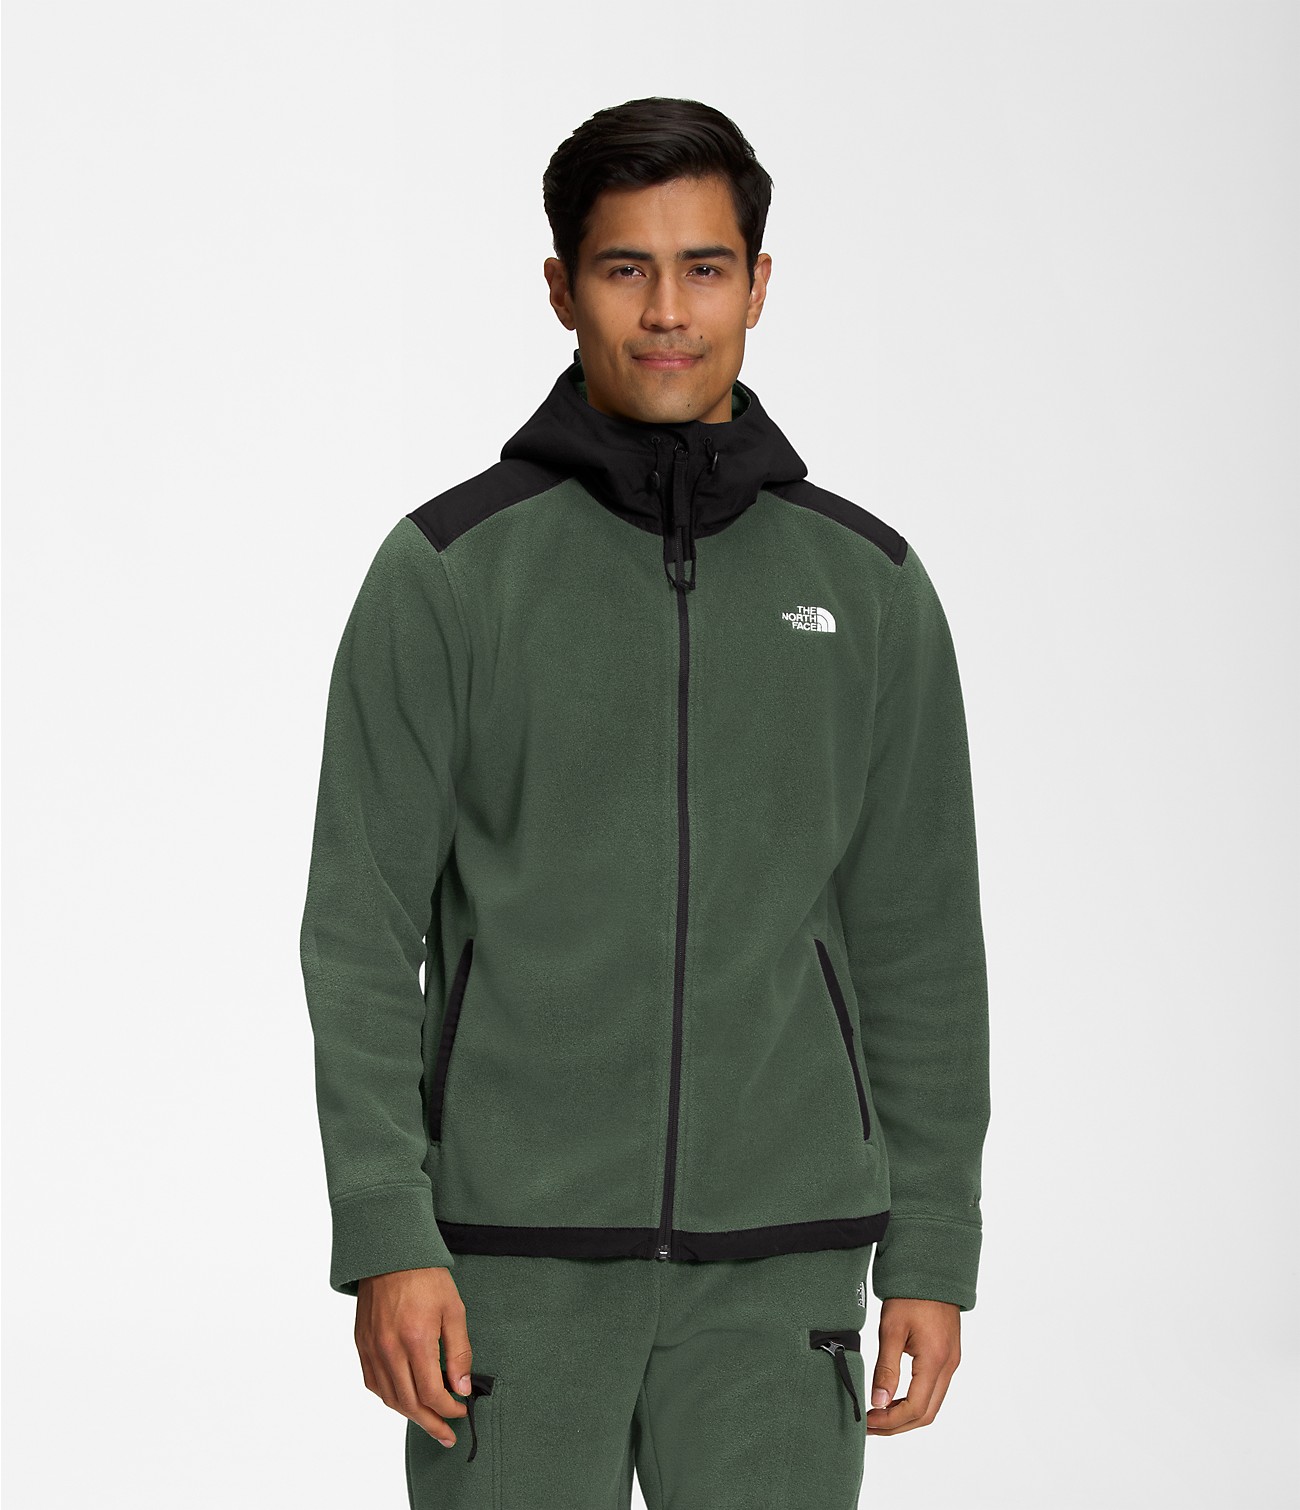 Canterbury of New Zealand Fleece Jacket Half Zip Fleece Jacket Size XL ...